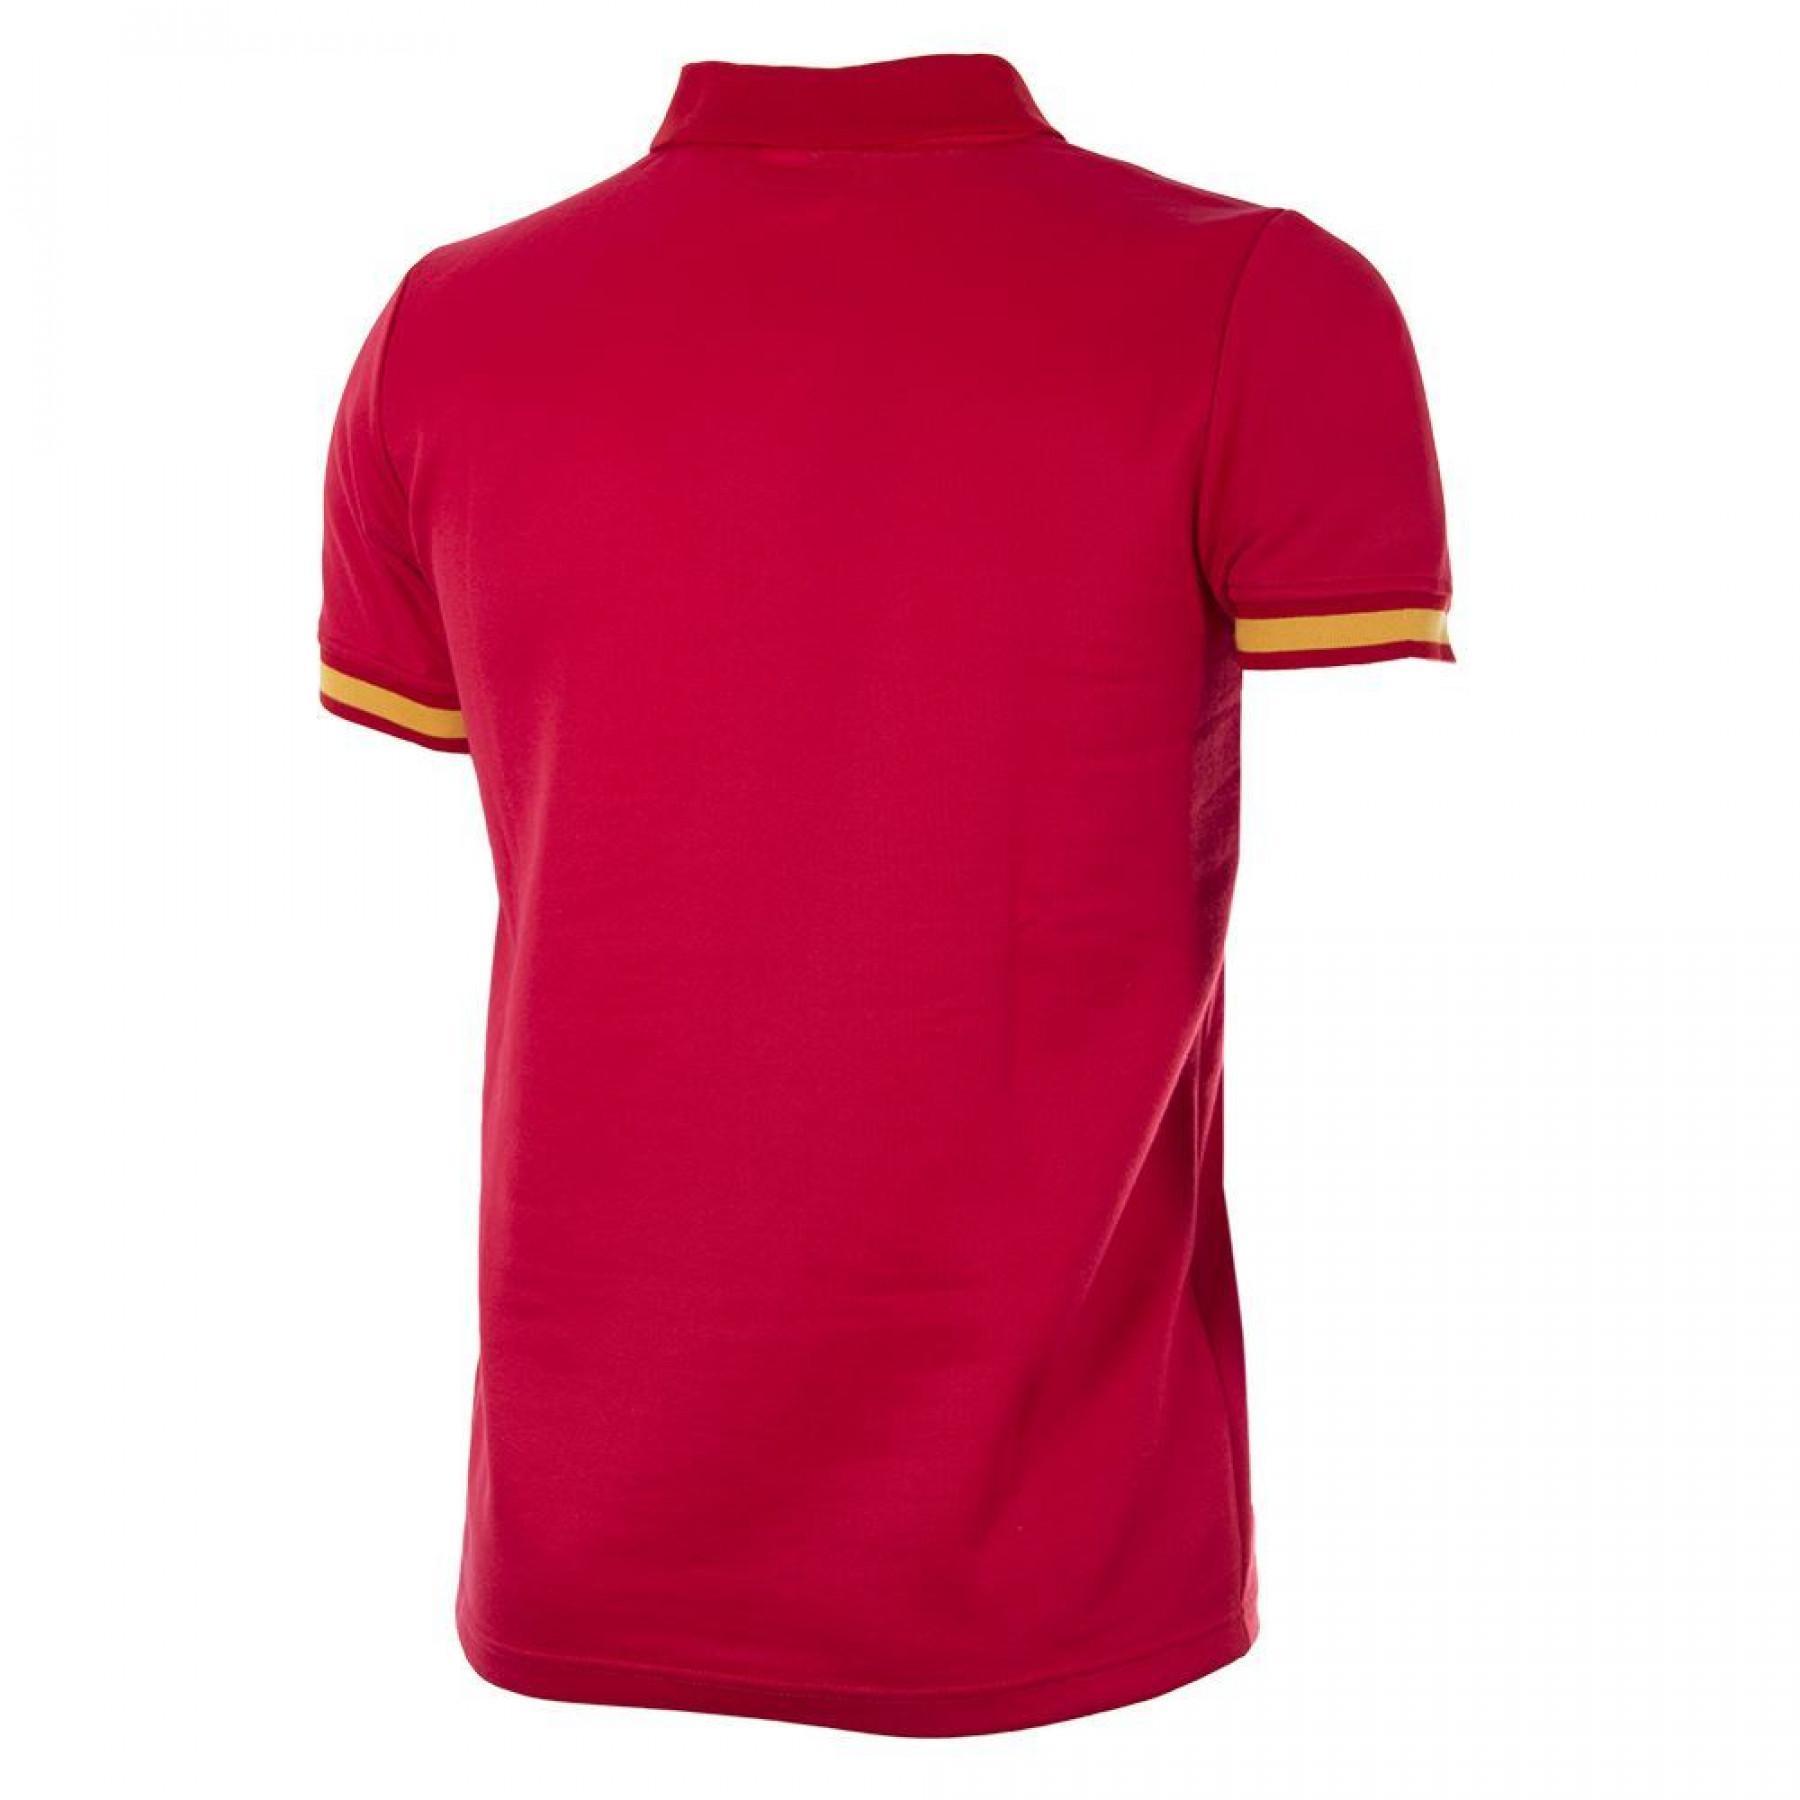 Camiseta Copa Espagne 1988